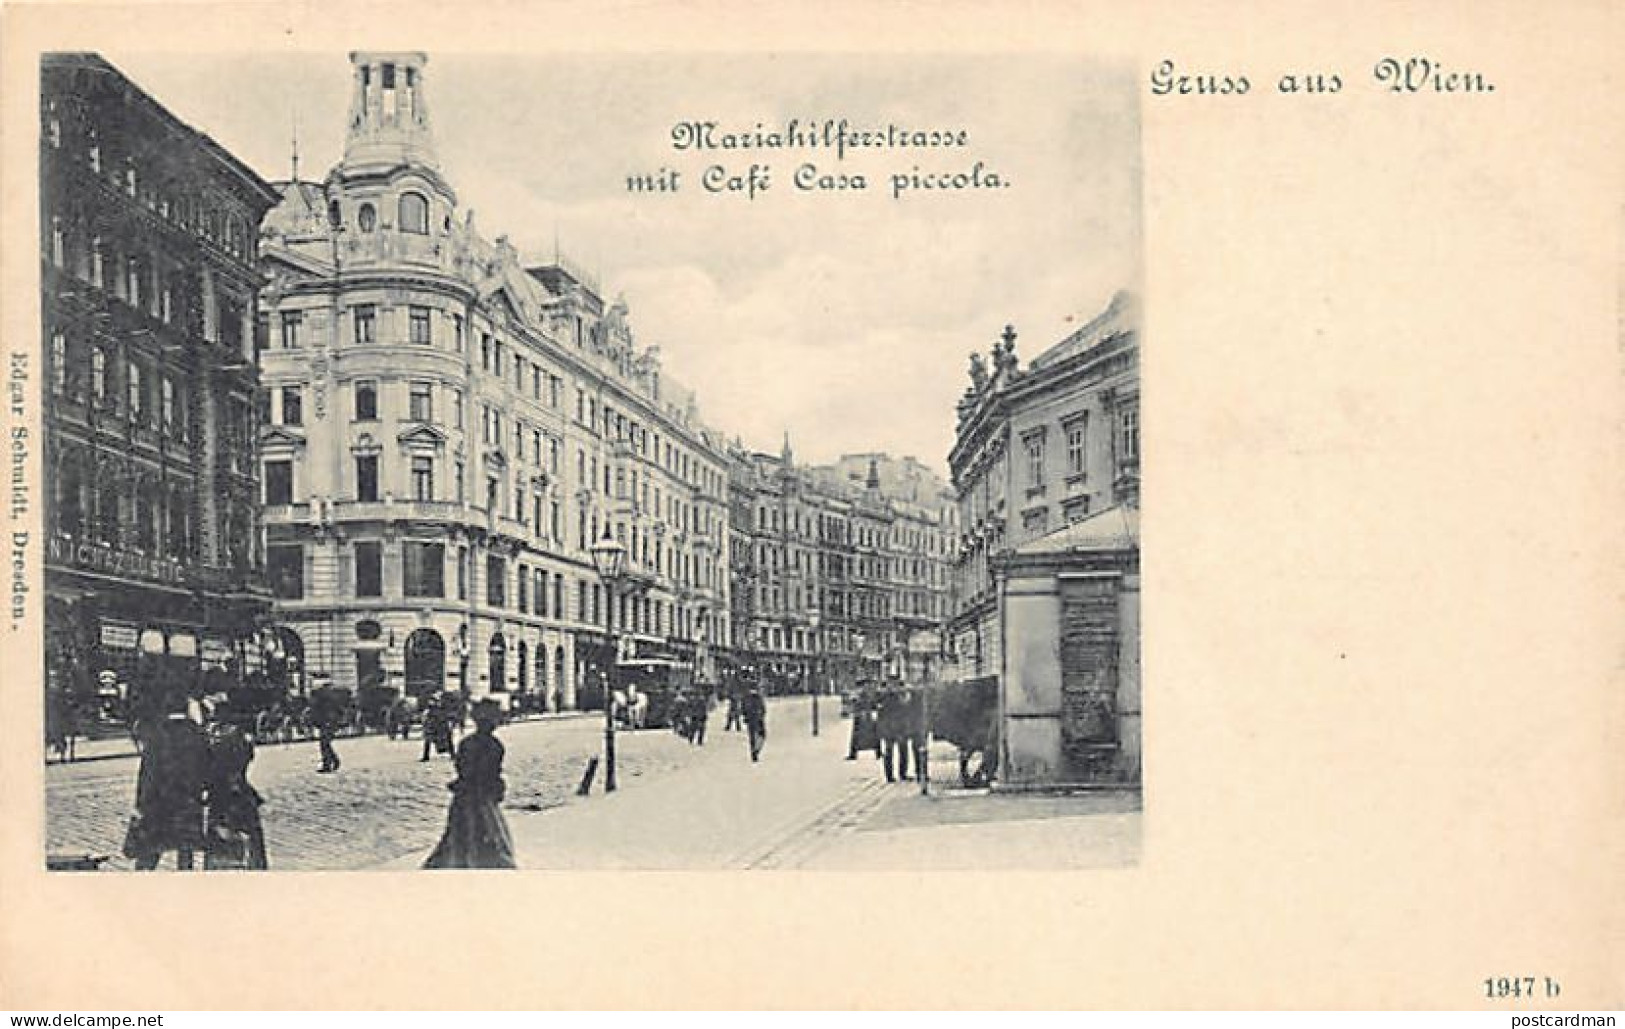 Österreich - Wien - Mariahilferstrasse - Café Casa Piccola - Verlag Edgar Schmidt 1947b - Vienna Center